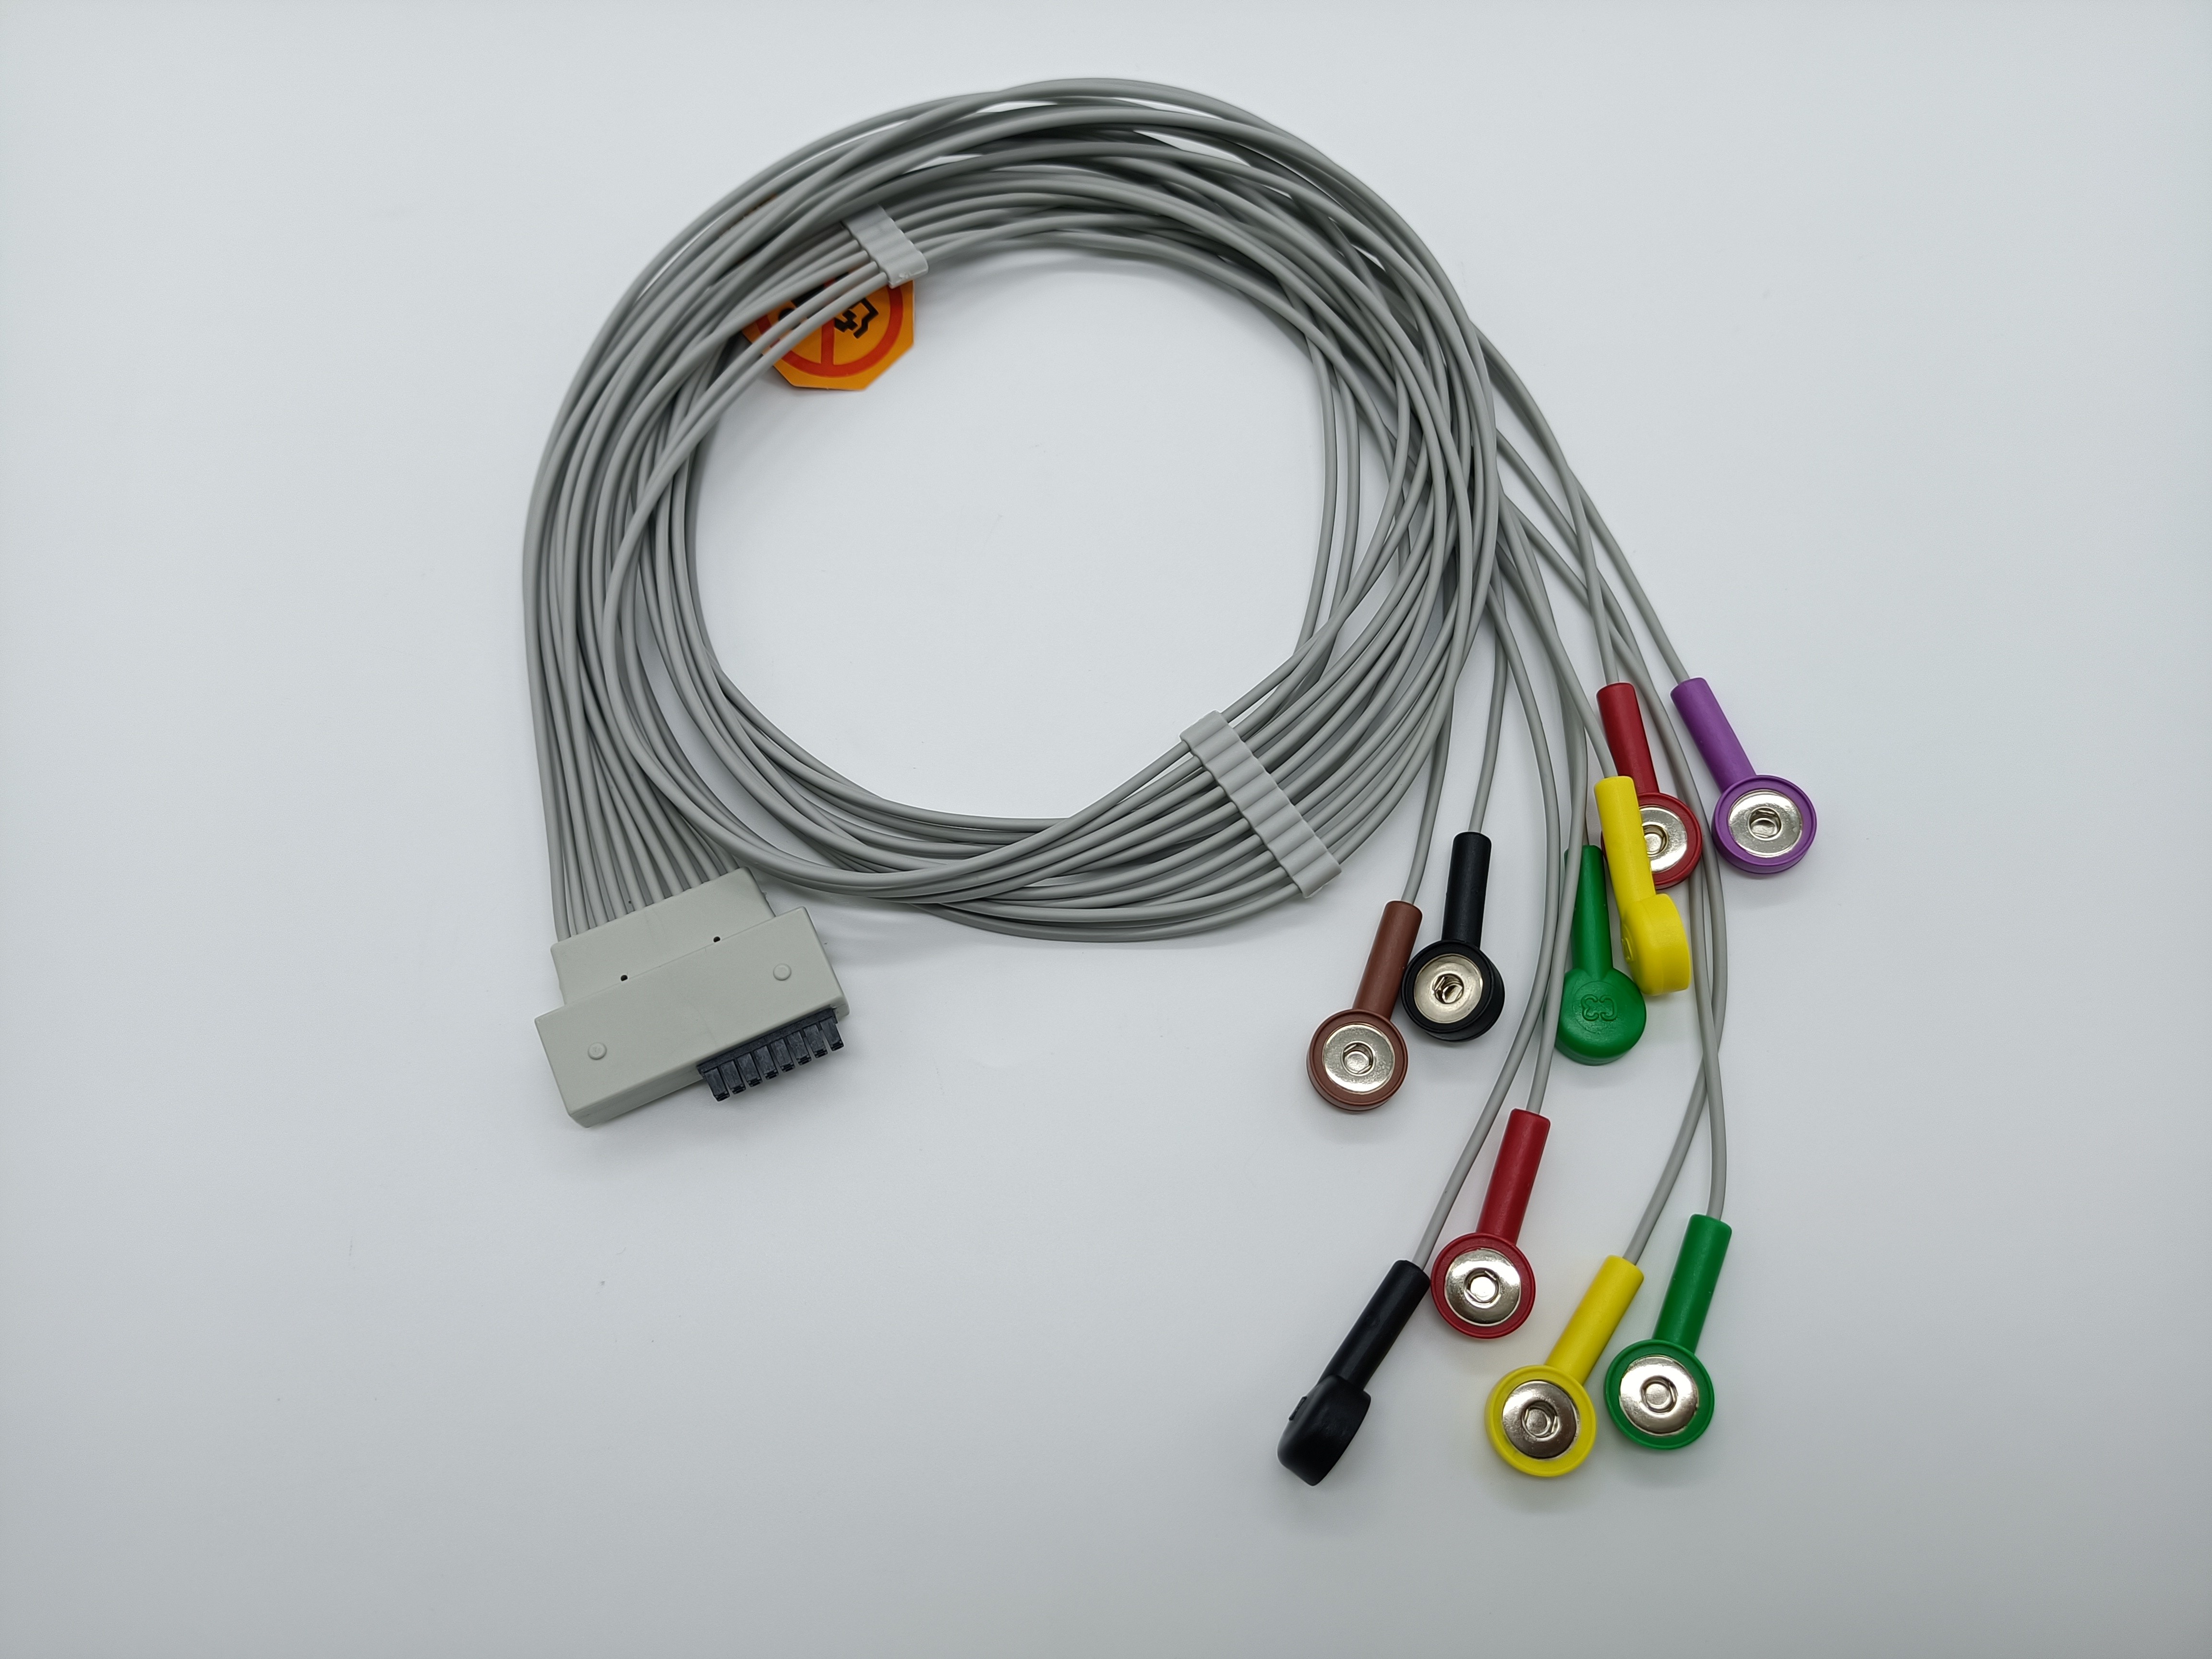 IEC AHA Snap Clip Banana 4.0 Holter ECG Cable 1m Compatible CARDIOLINE